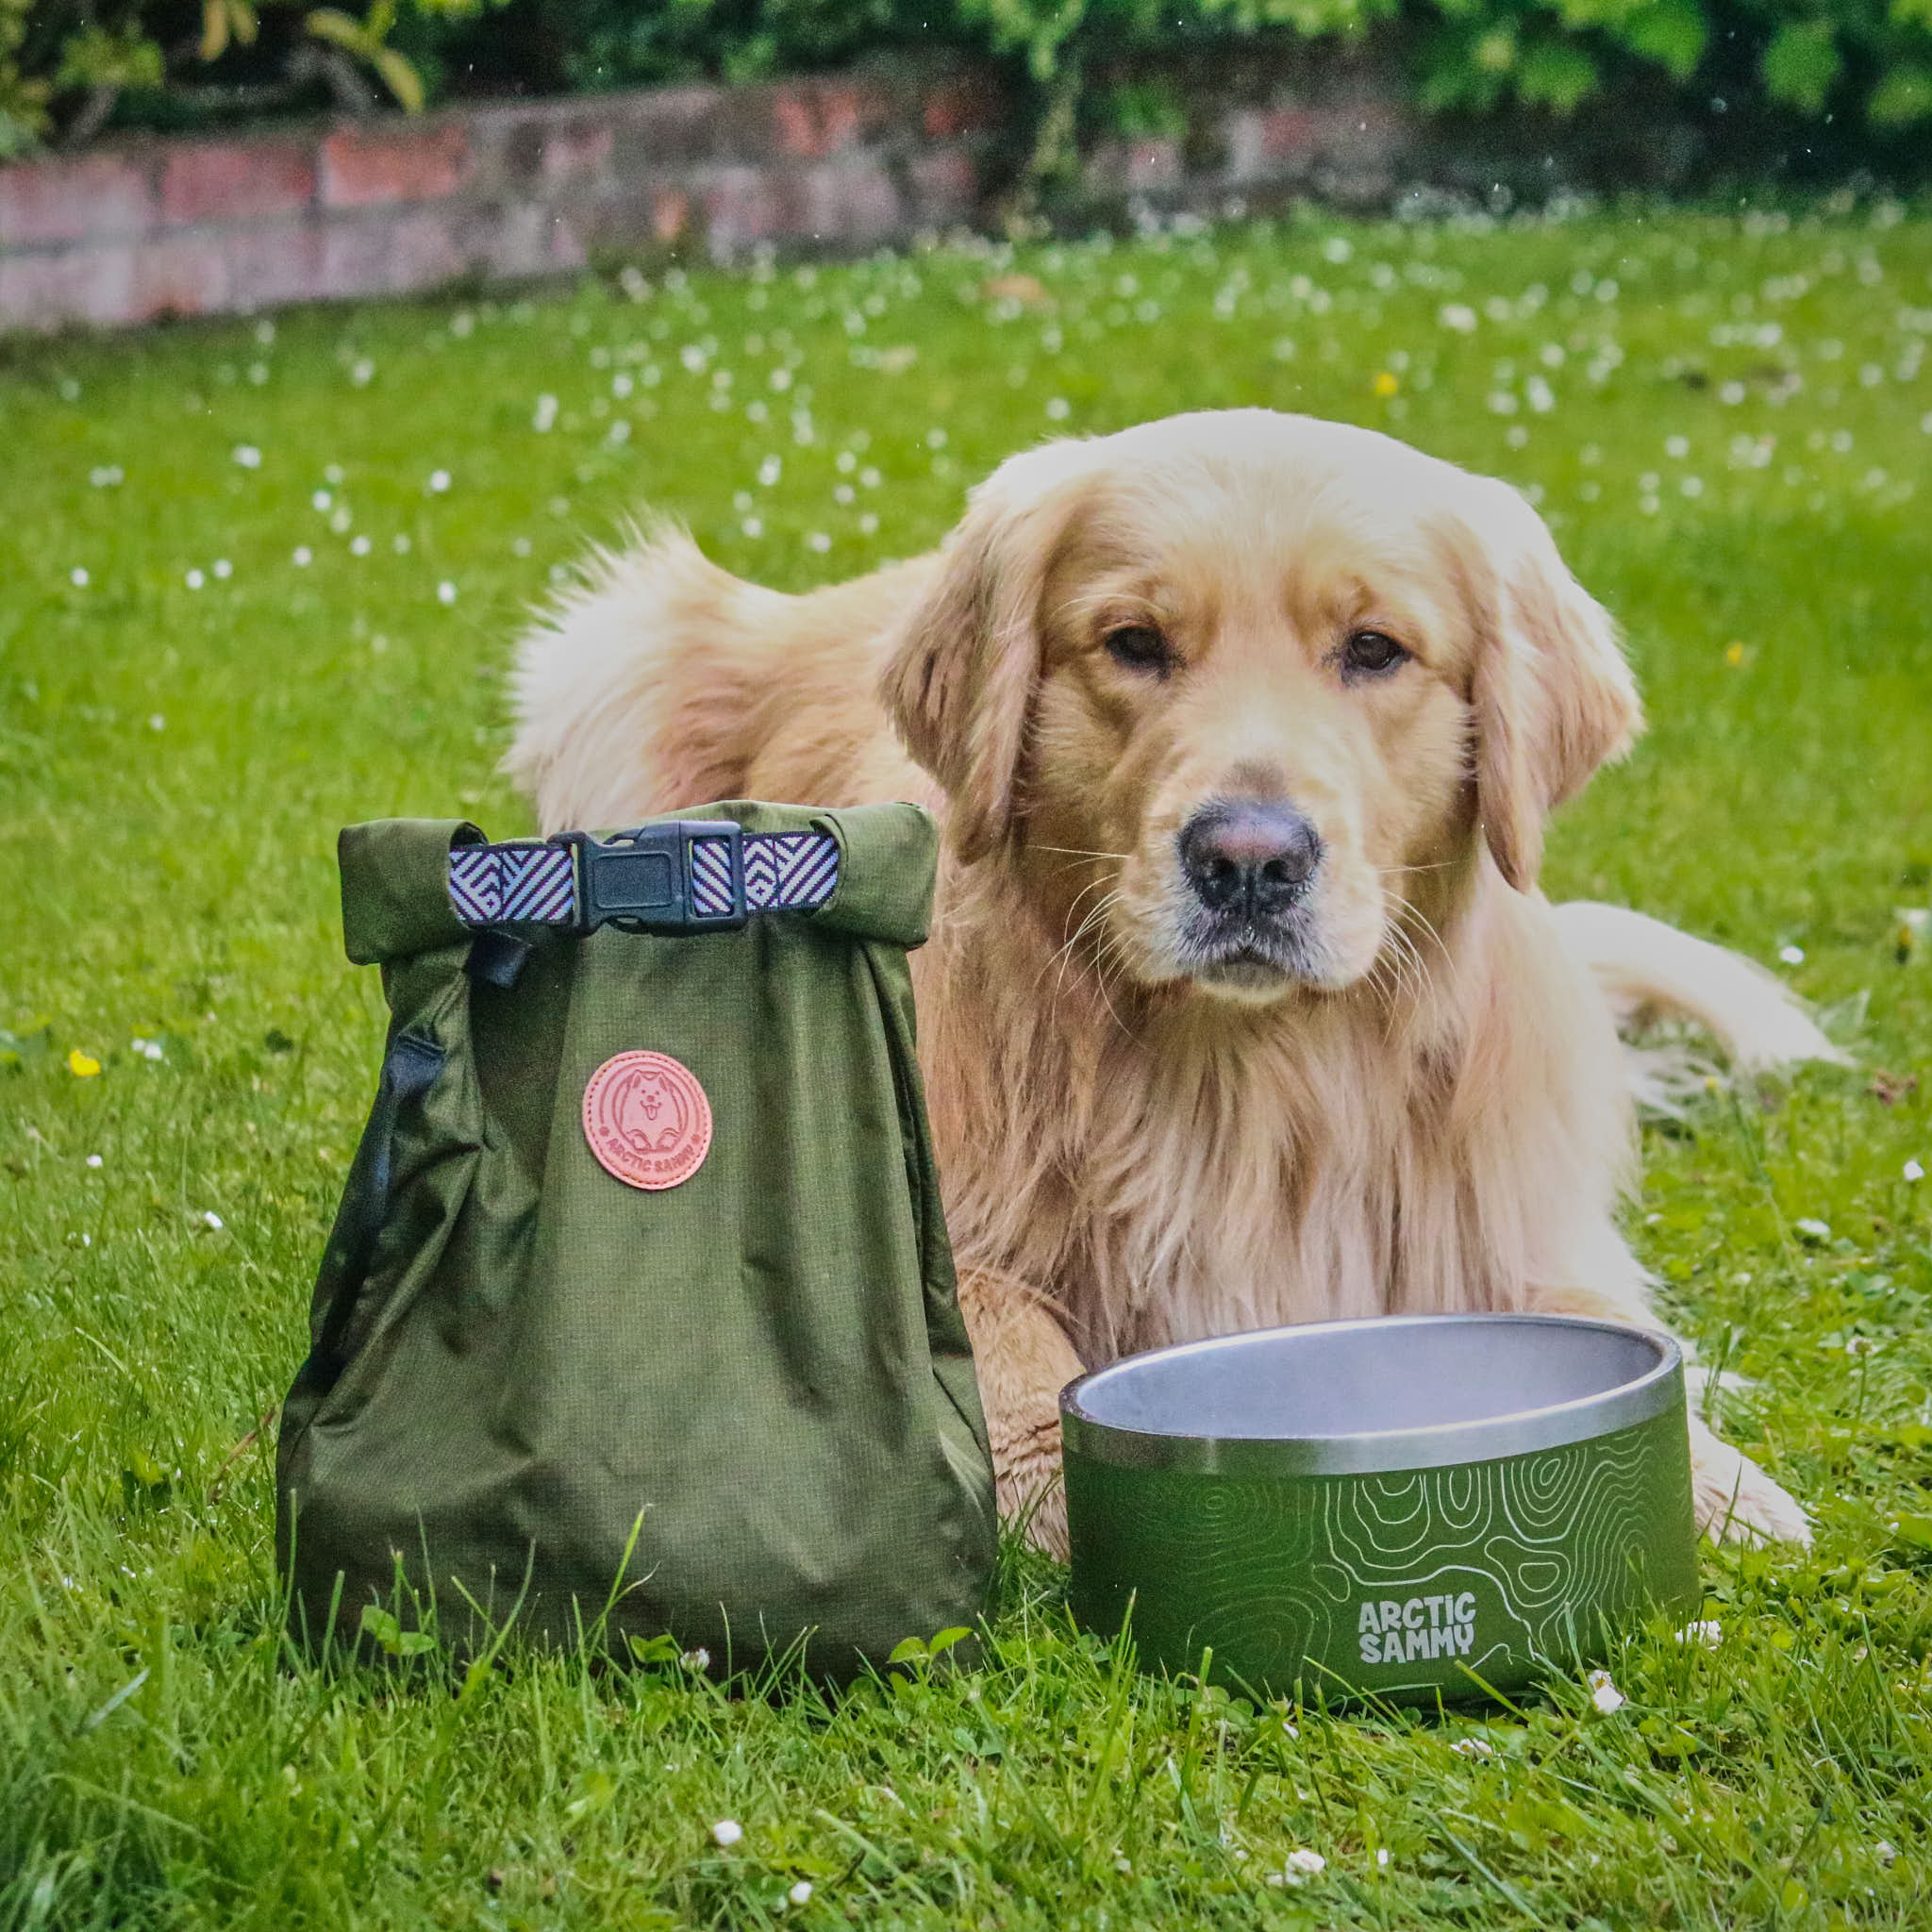 The Explorer Dog Food Travel Bag